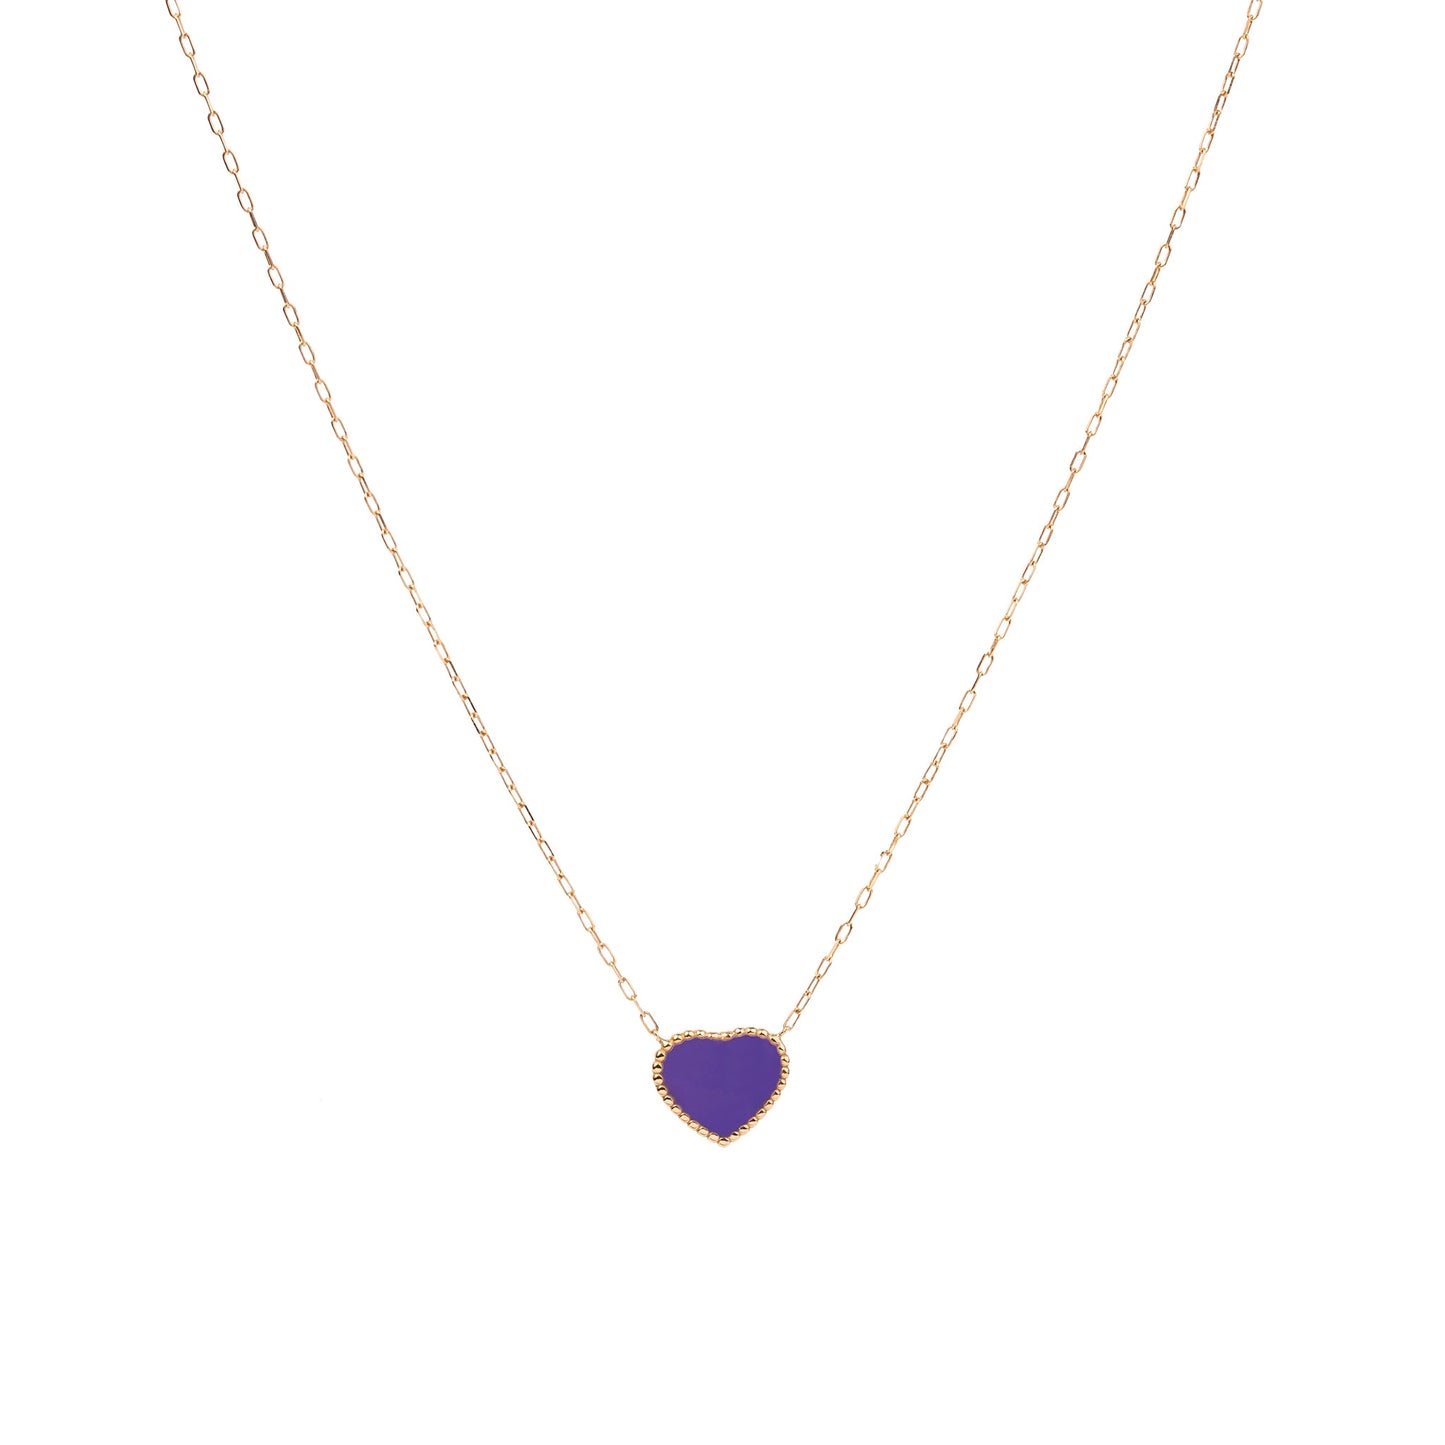 The Amethyst Enamel heart necklace - Oria.jewelry